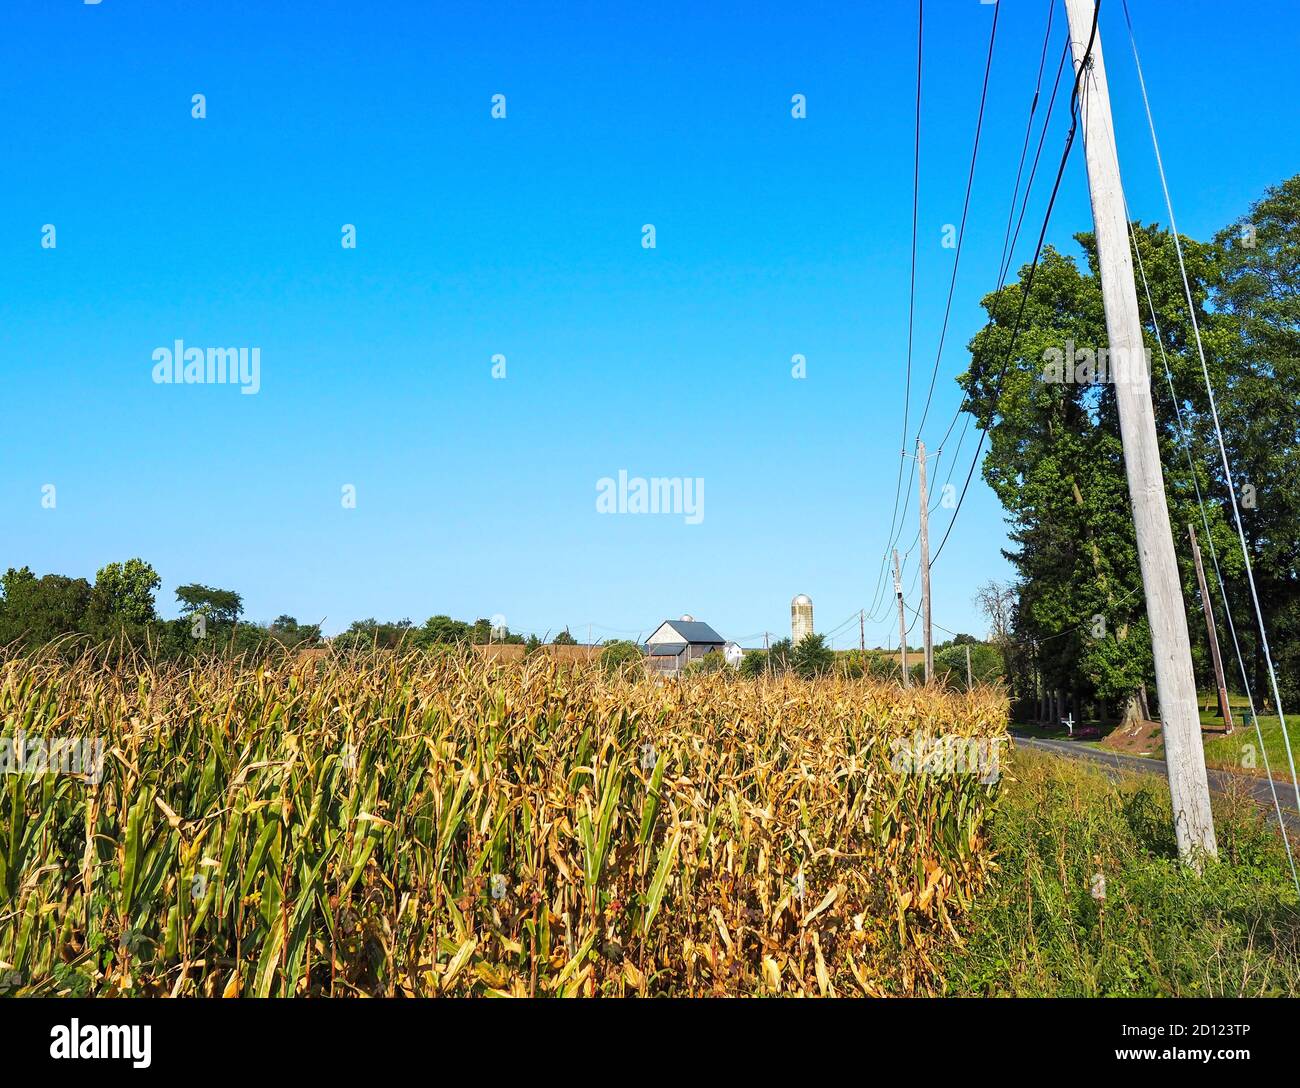 Paysage rural avec champs de maïs, silos à grains, une grange, de vieilles lignes électriques, et un ciel bleu dans la campagne de Pennsylvanie. Banque D'Images